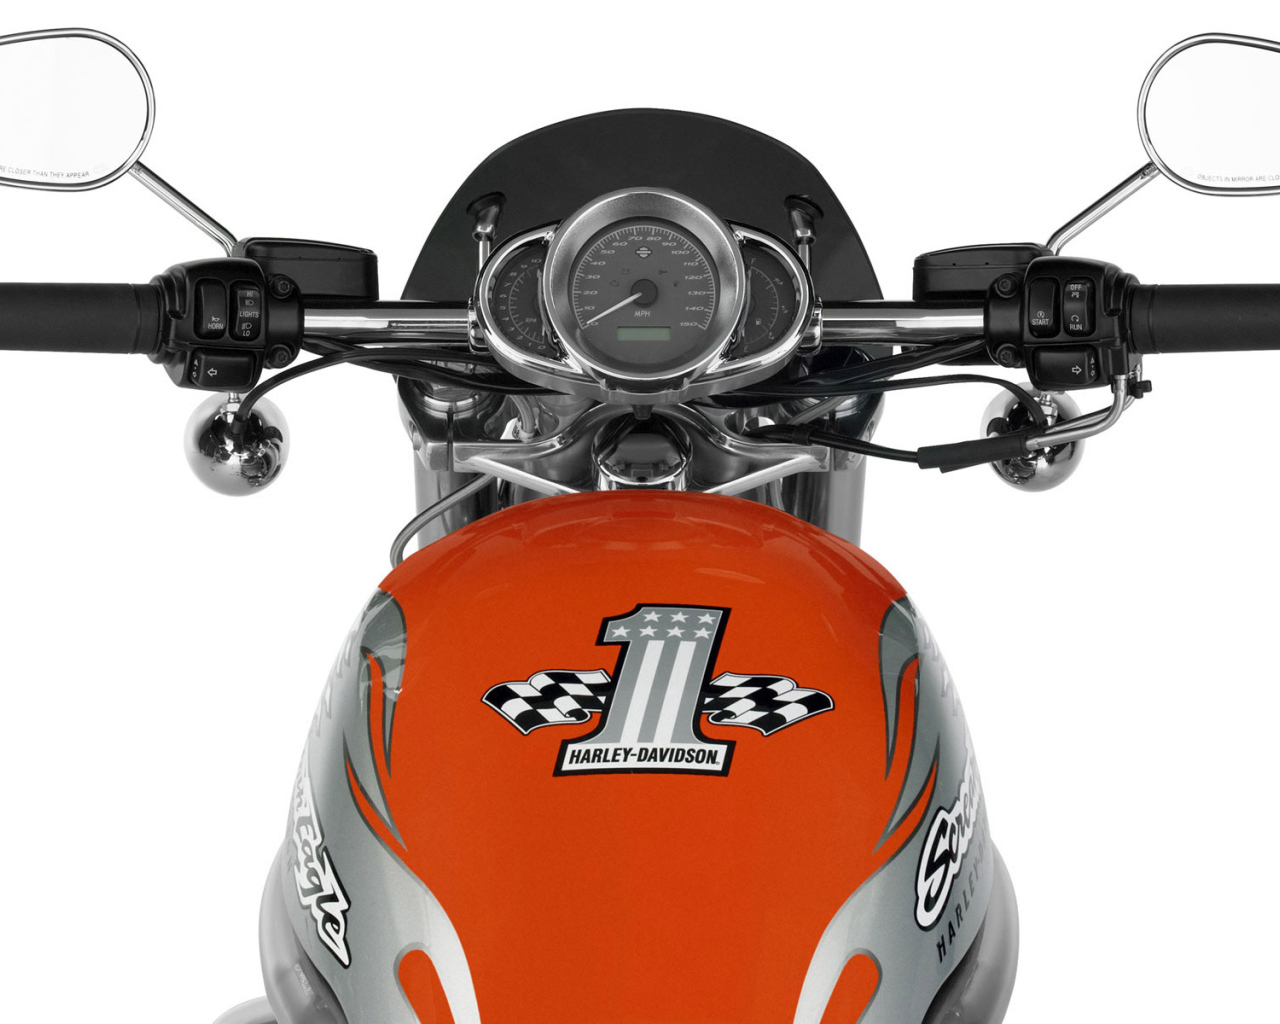 Harley Davidson бензобак и контрольная панель